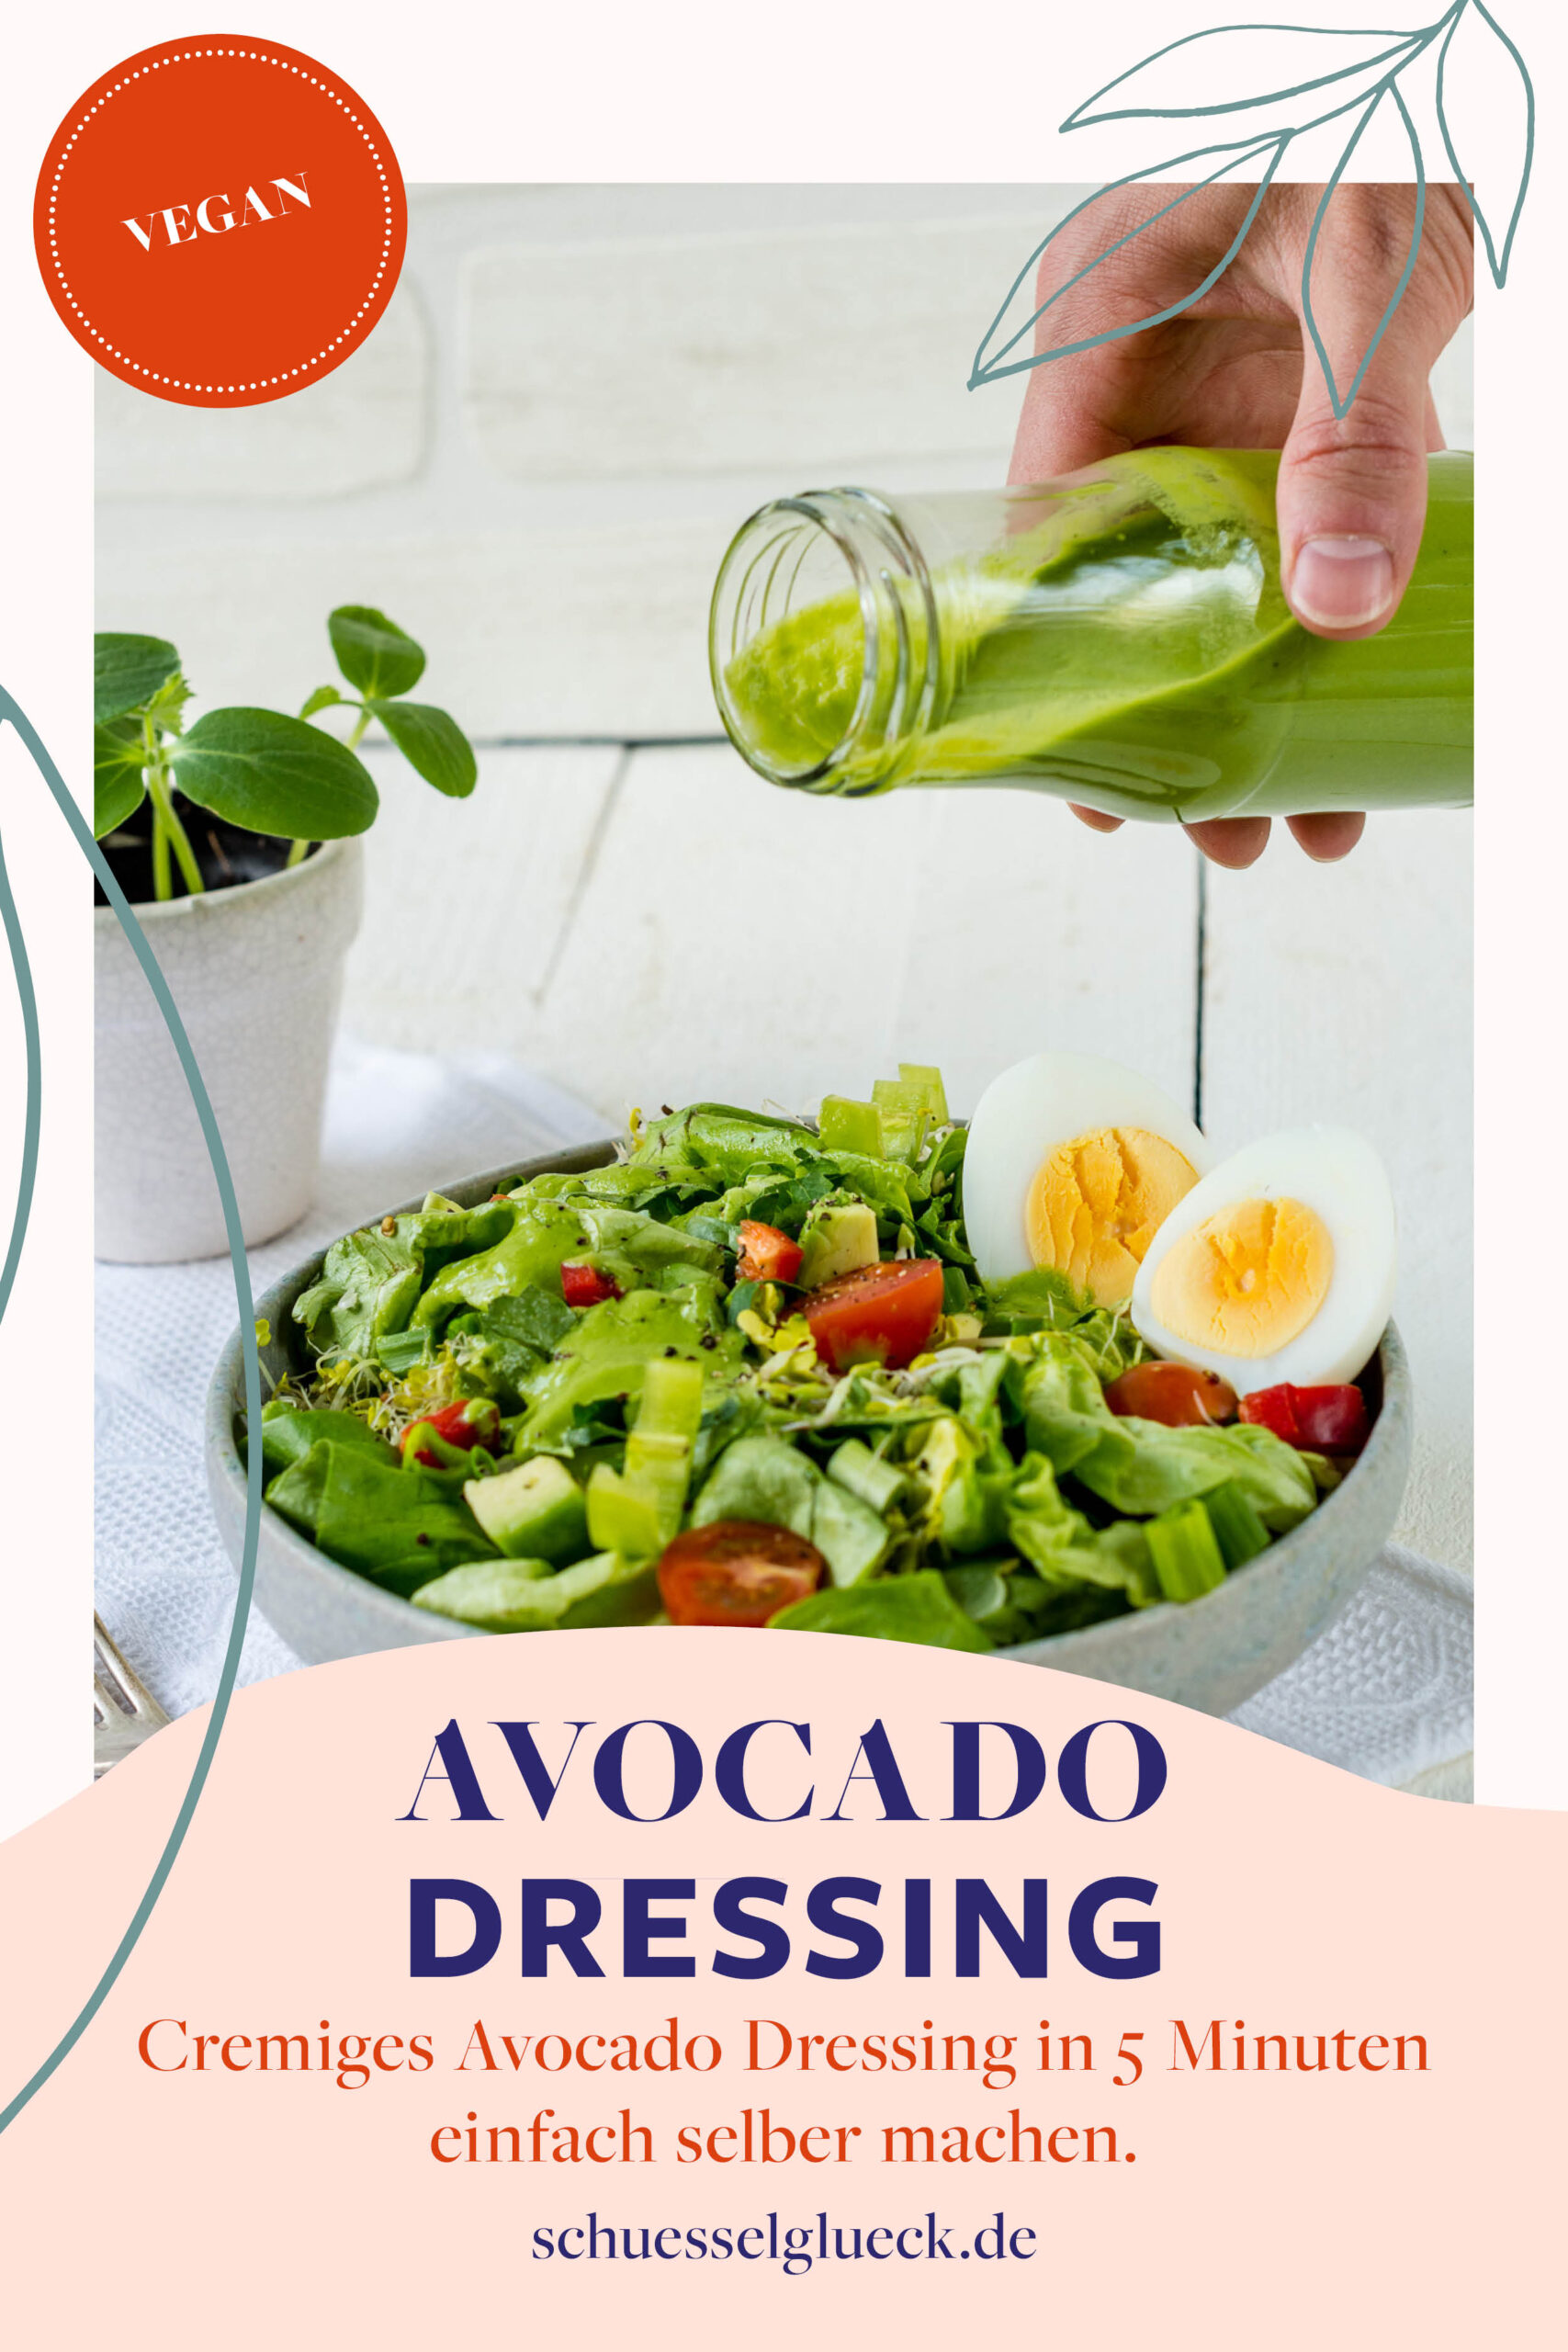 Herrlich cremiges Avocado Dressing mit frischen Kräutern – macht jeden Salat zum Lieblingssalat!